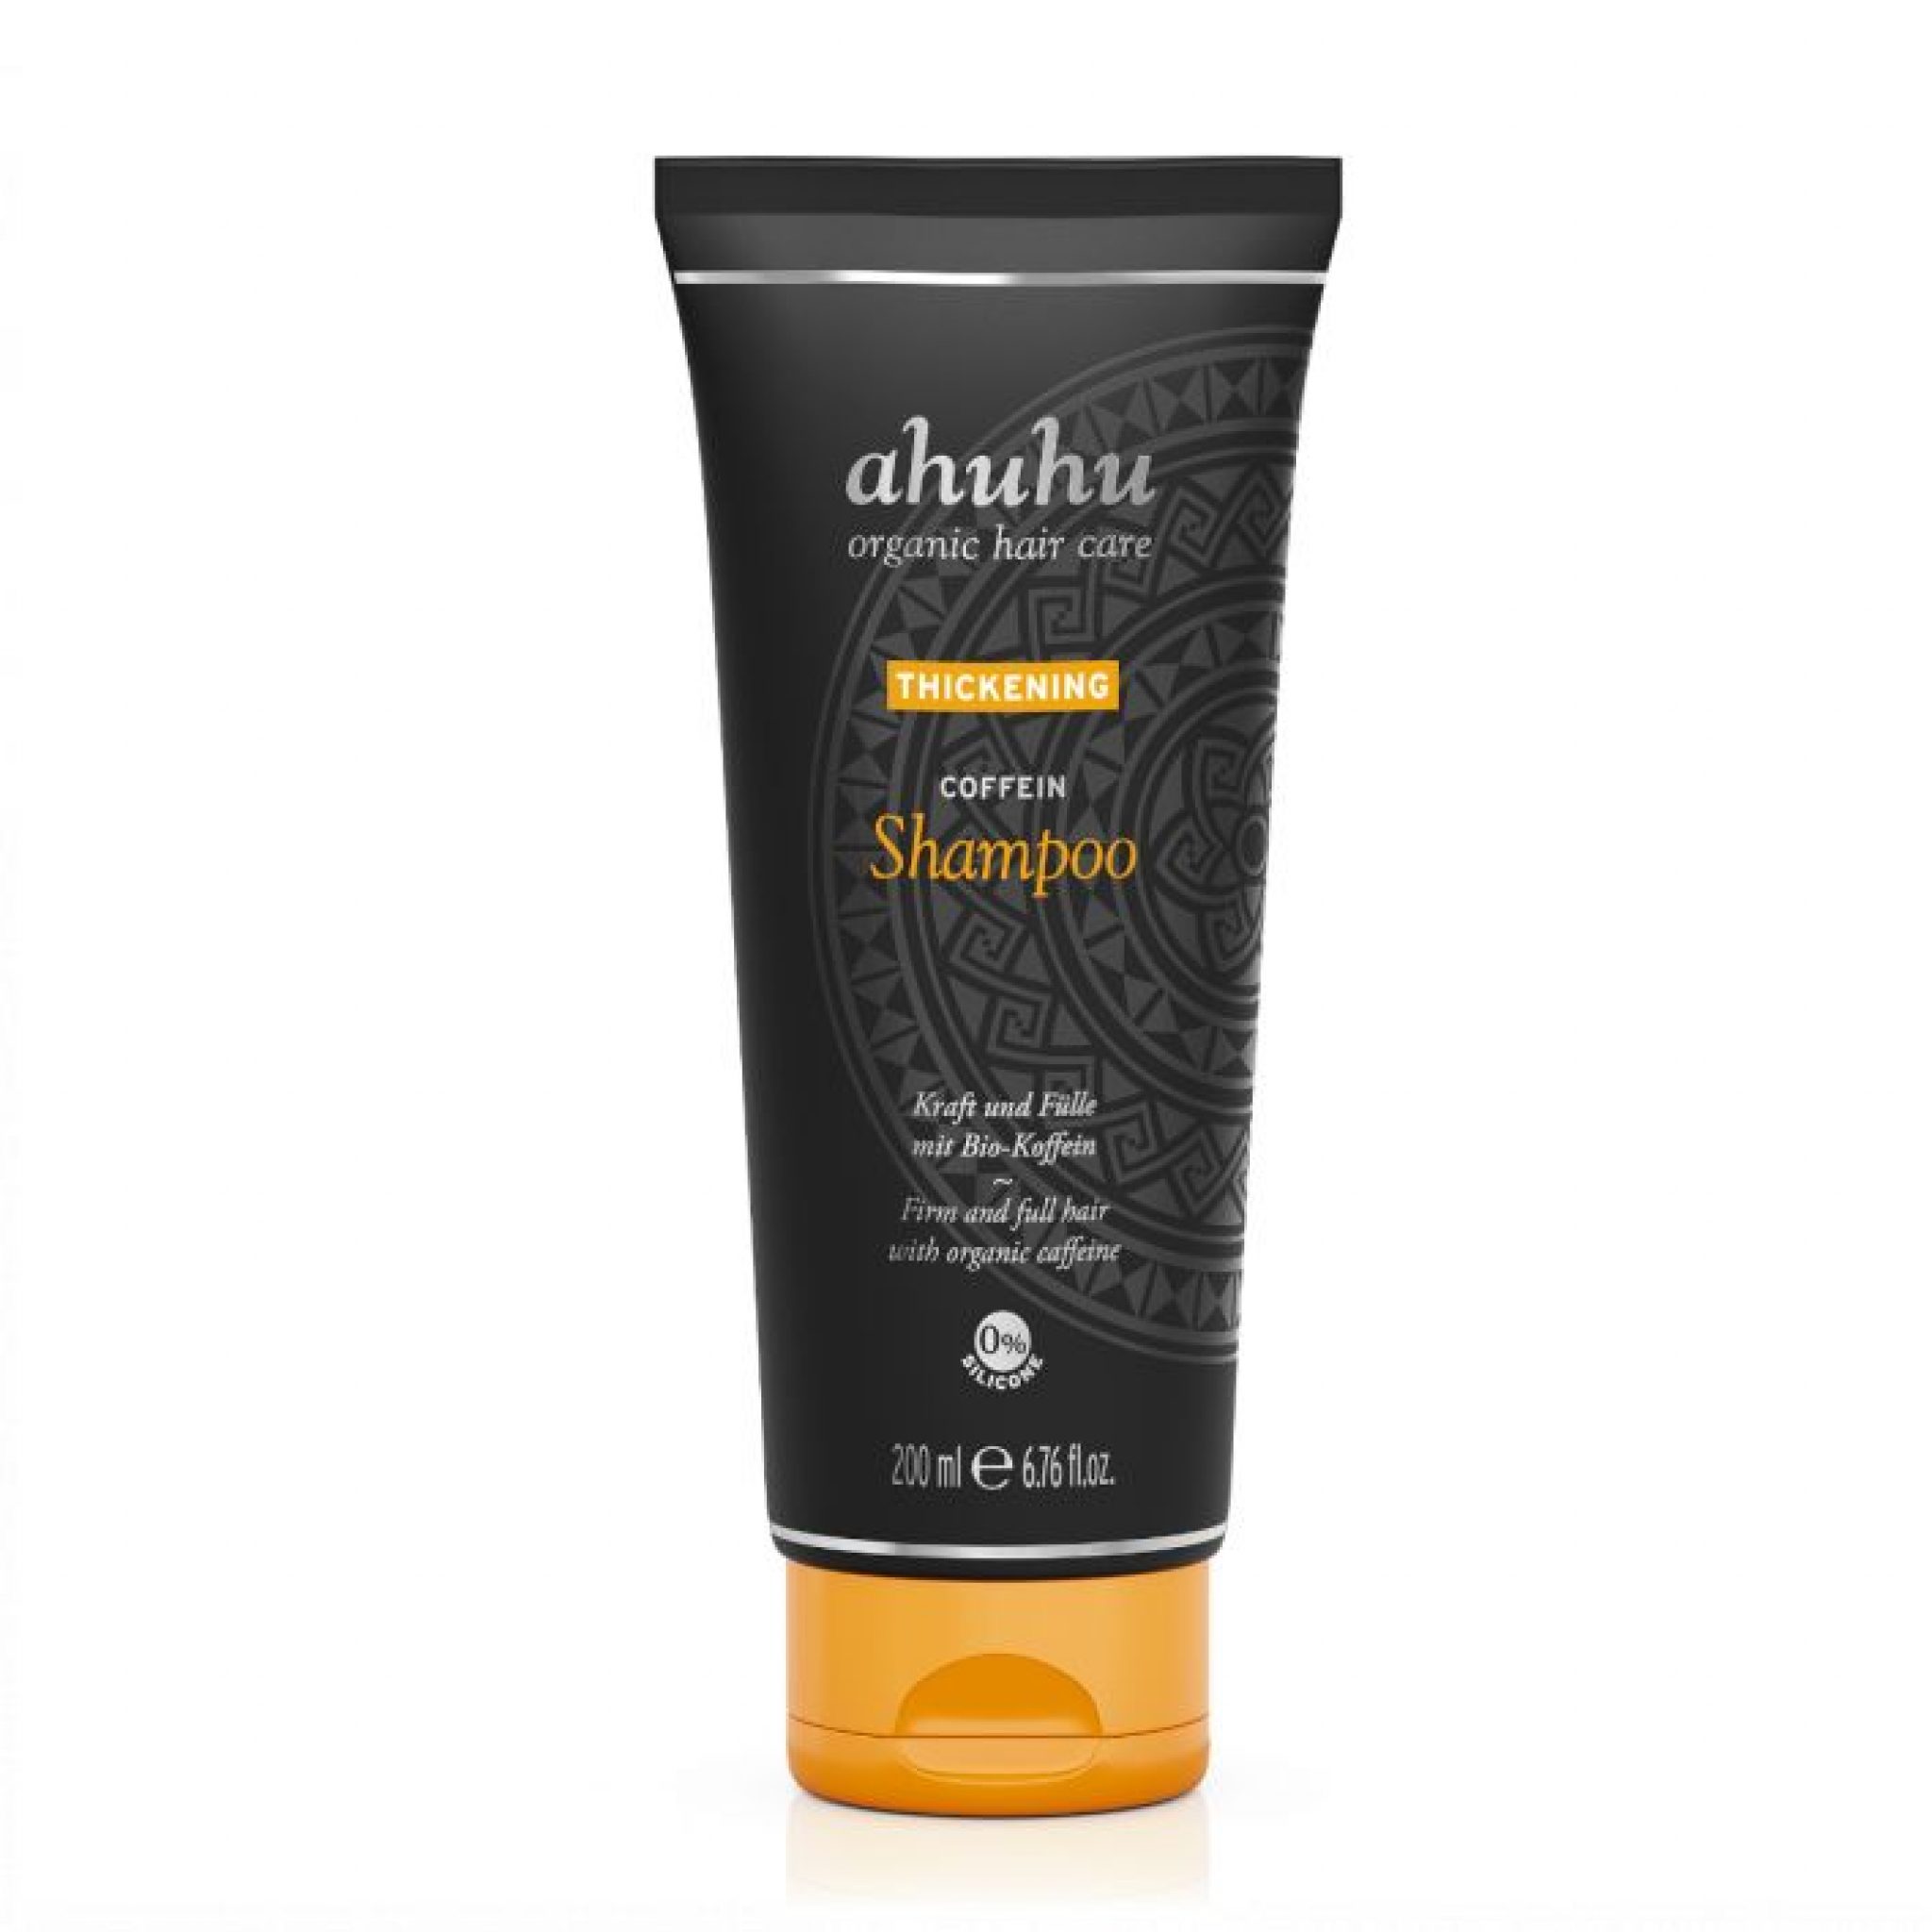 ahuhu_Bio-Haarpflege Koffein thickening Shampoo_bewertung